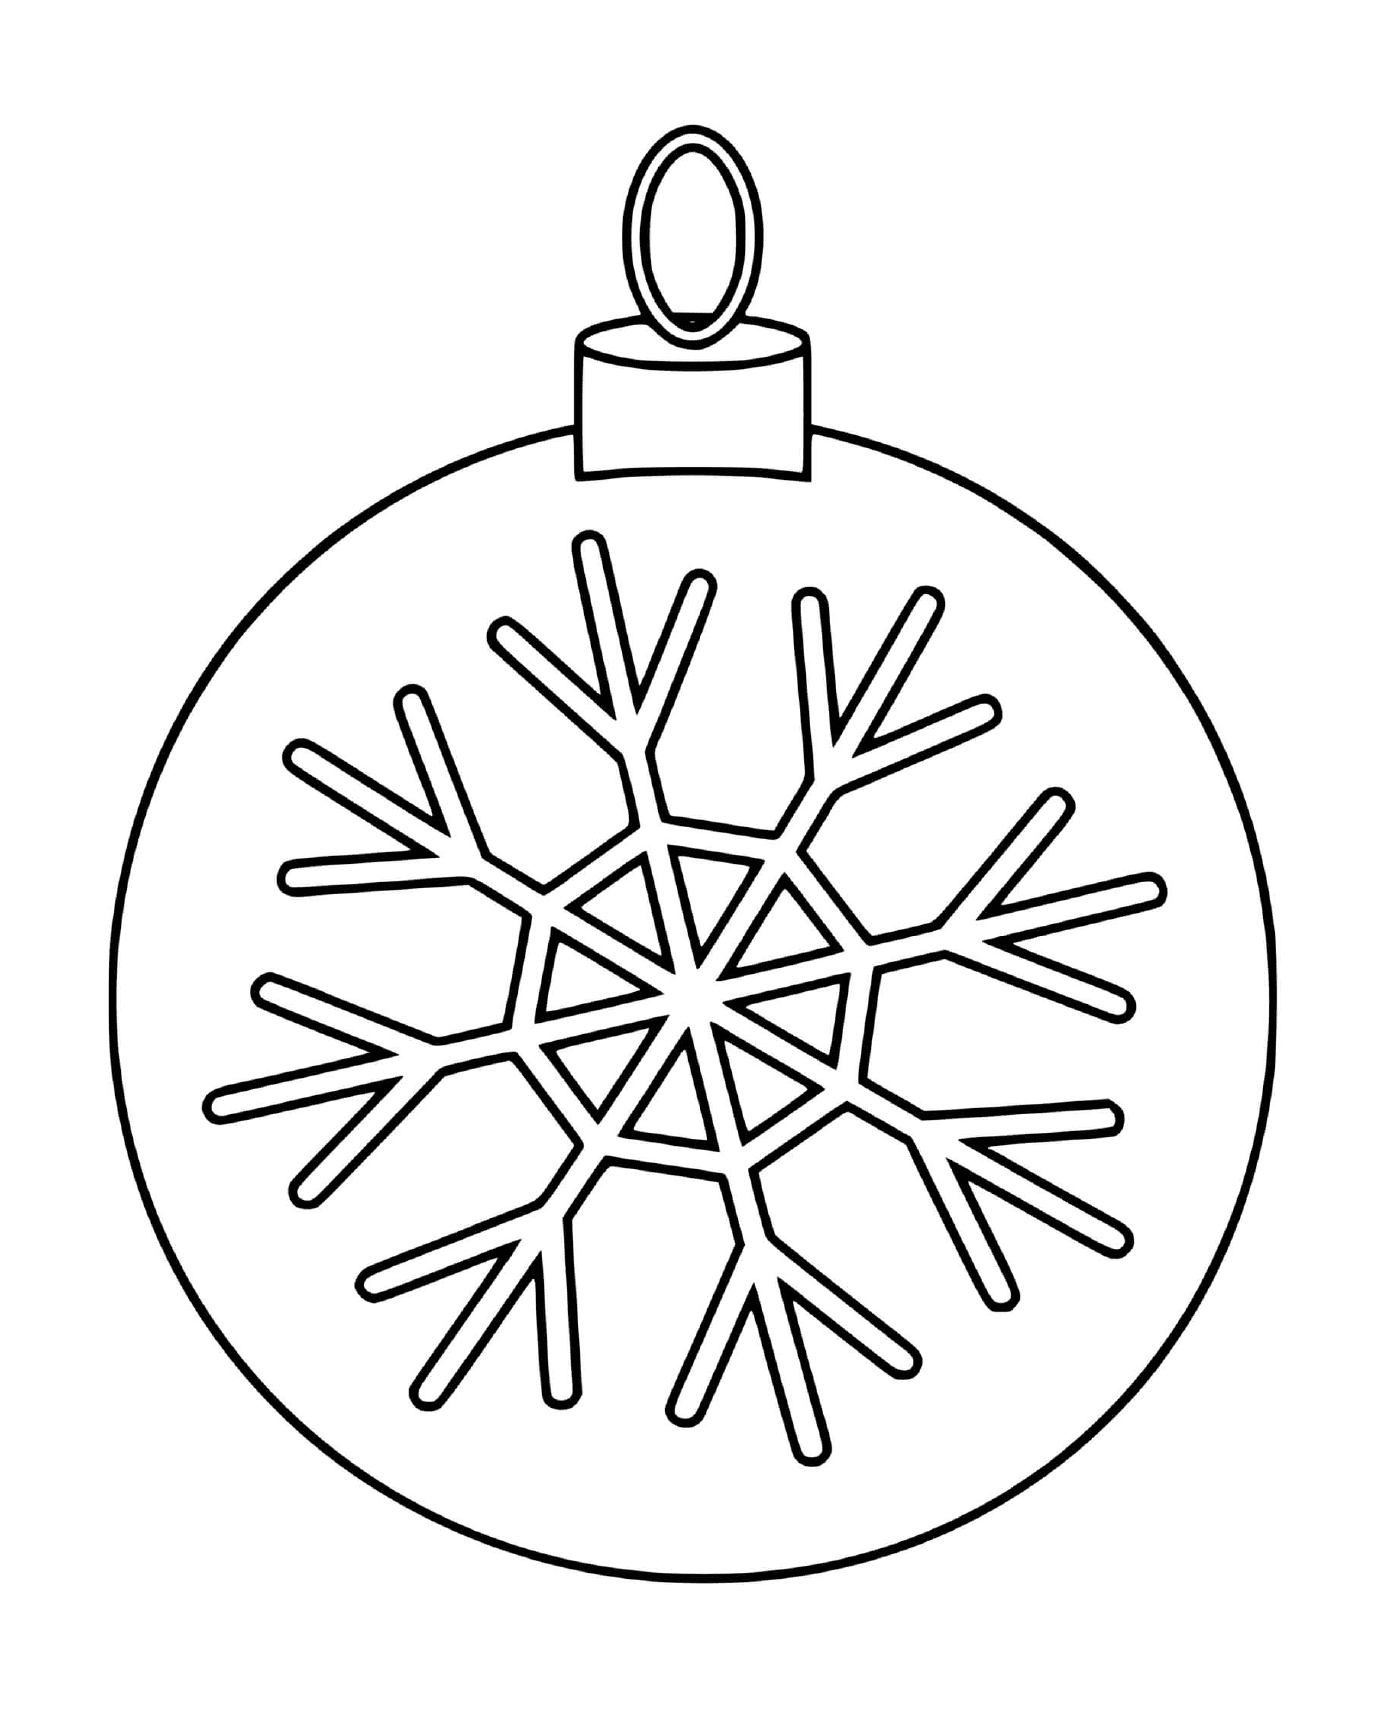   Une boule de Noël avec un flocon de neige pour sapin 